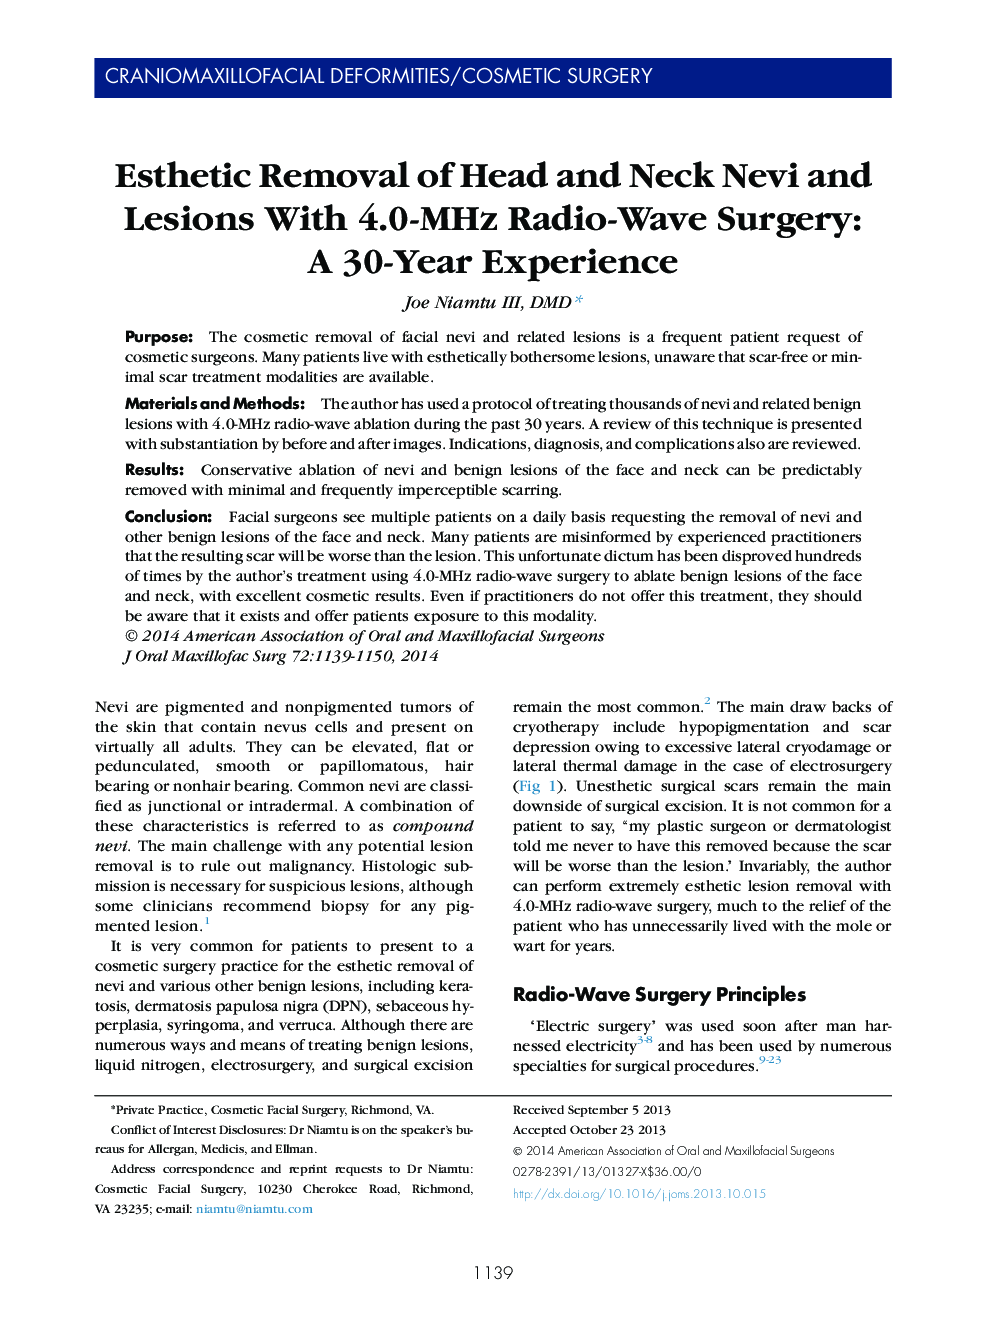 حذف عصاره سر و گردن نوی و ضایعات با جراحی رادیویی 4.0 مگاهرتز: یک تجربه 30 ساله 